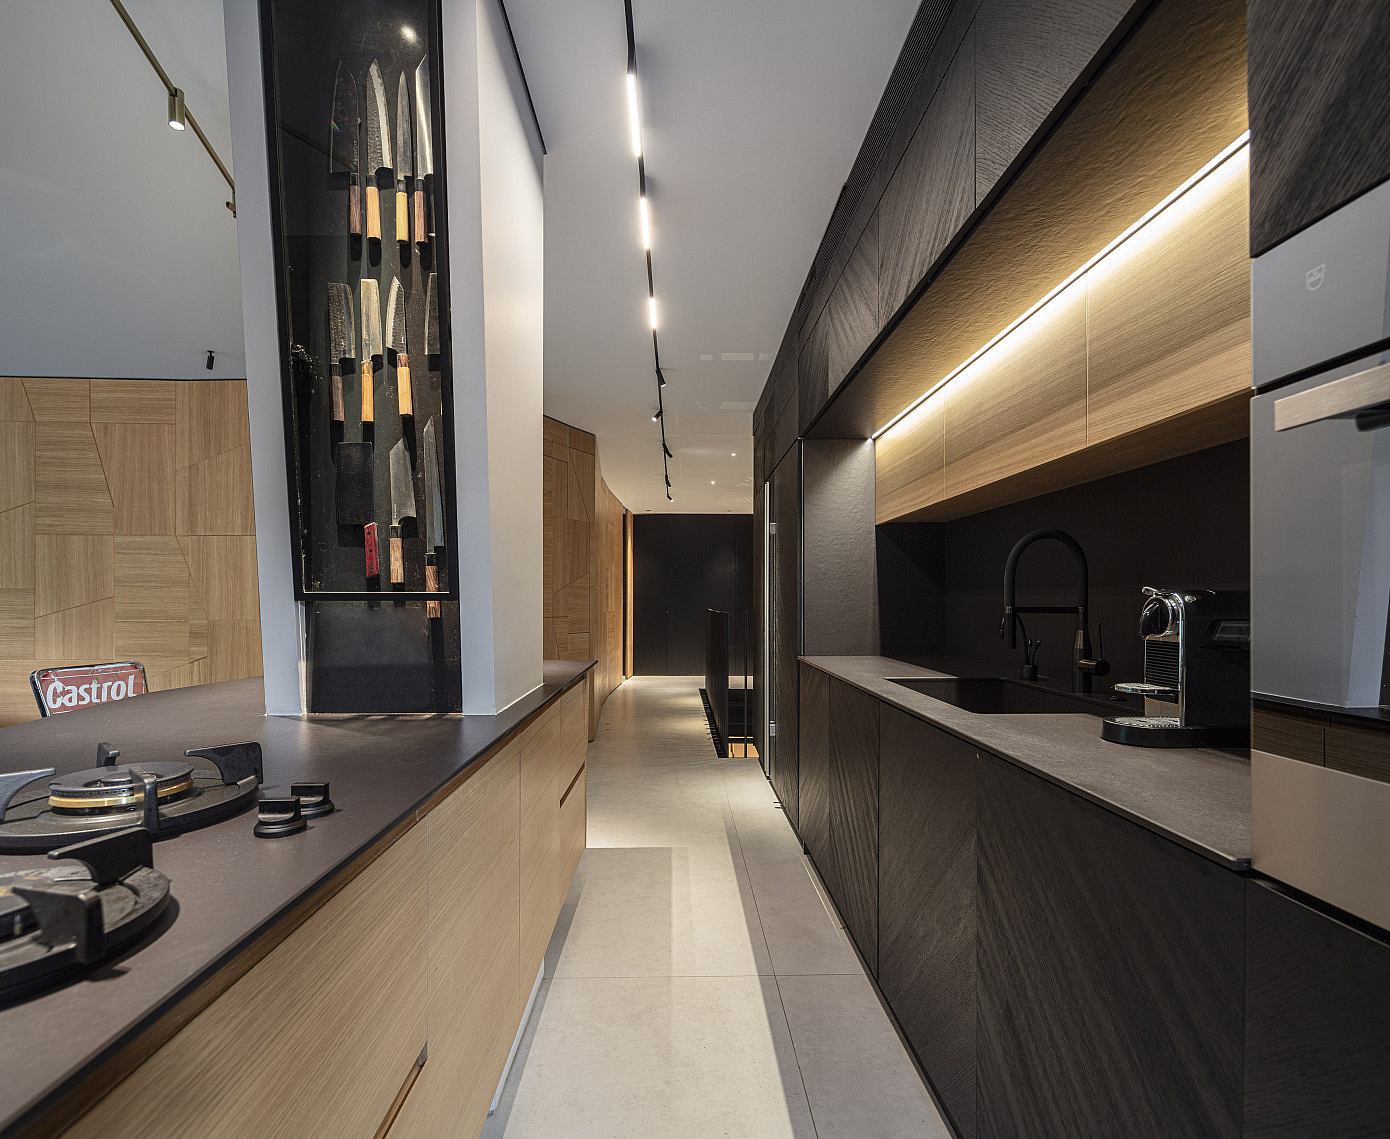 KNYE32 – Northern Star by Yaron Eldad / Architecture + Interior Design